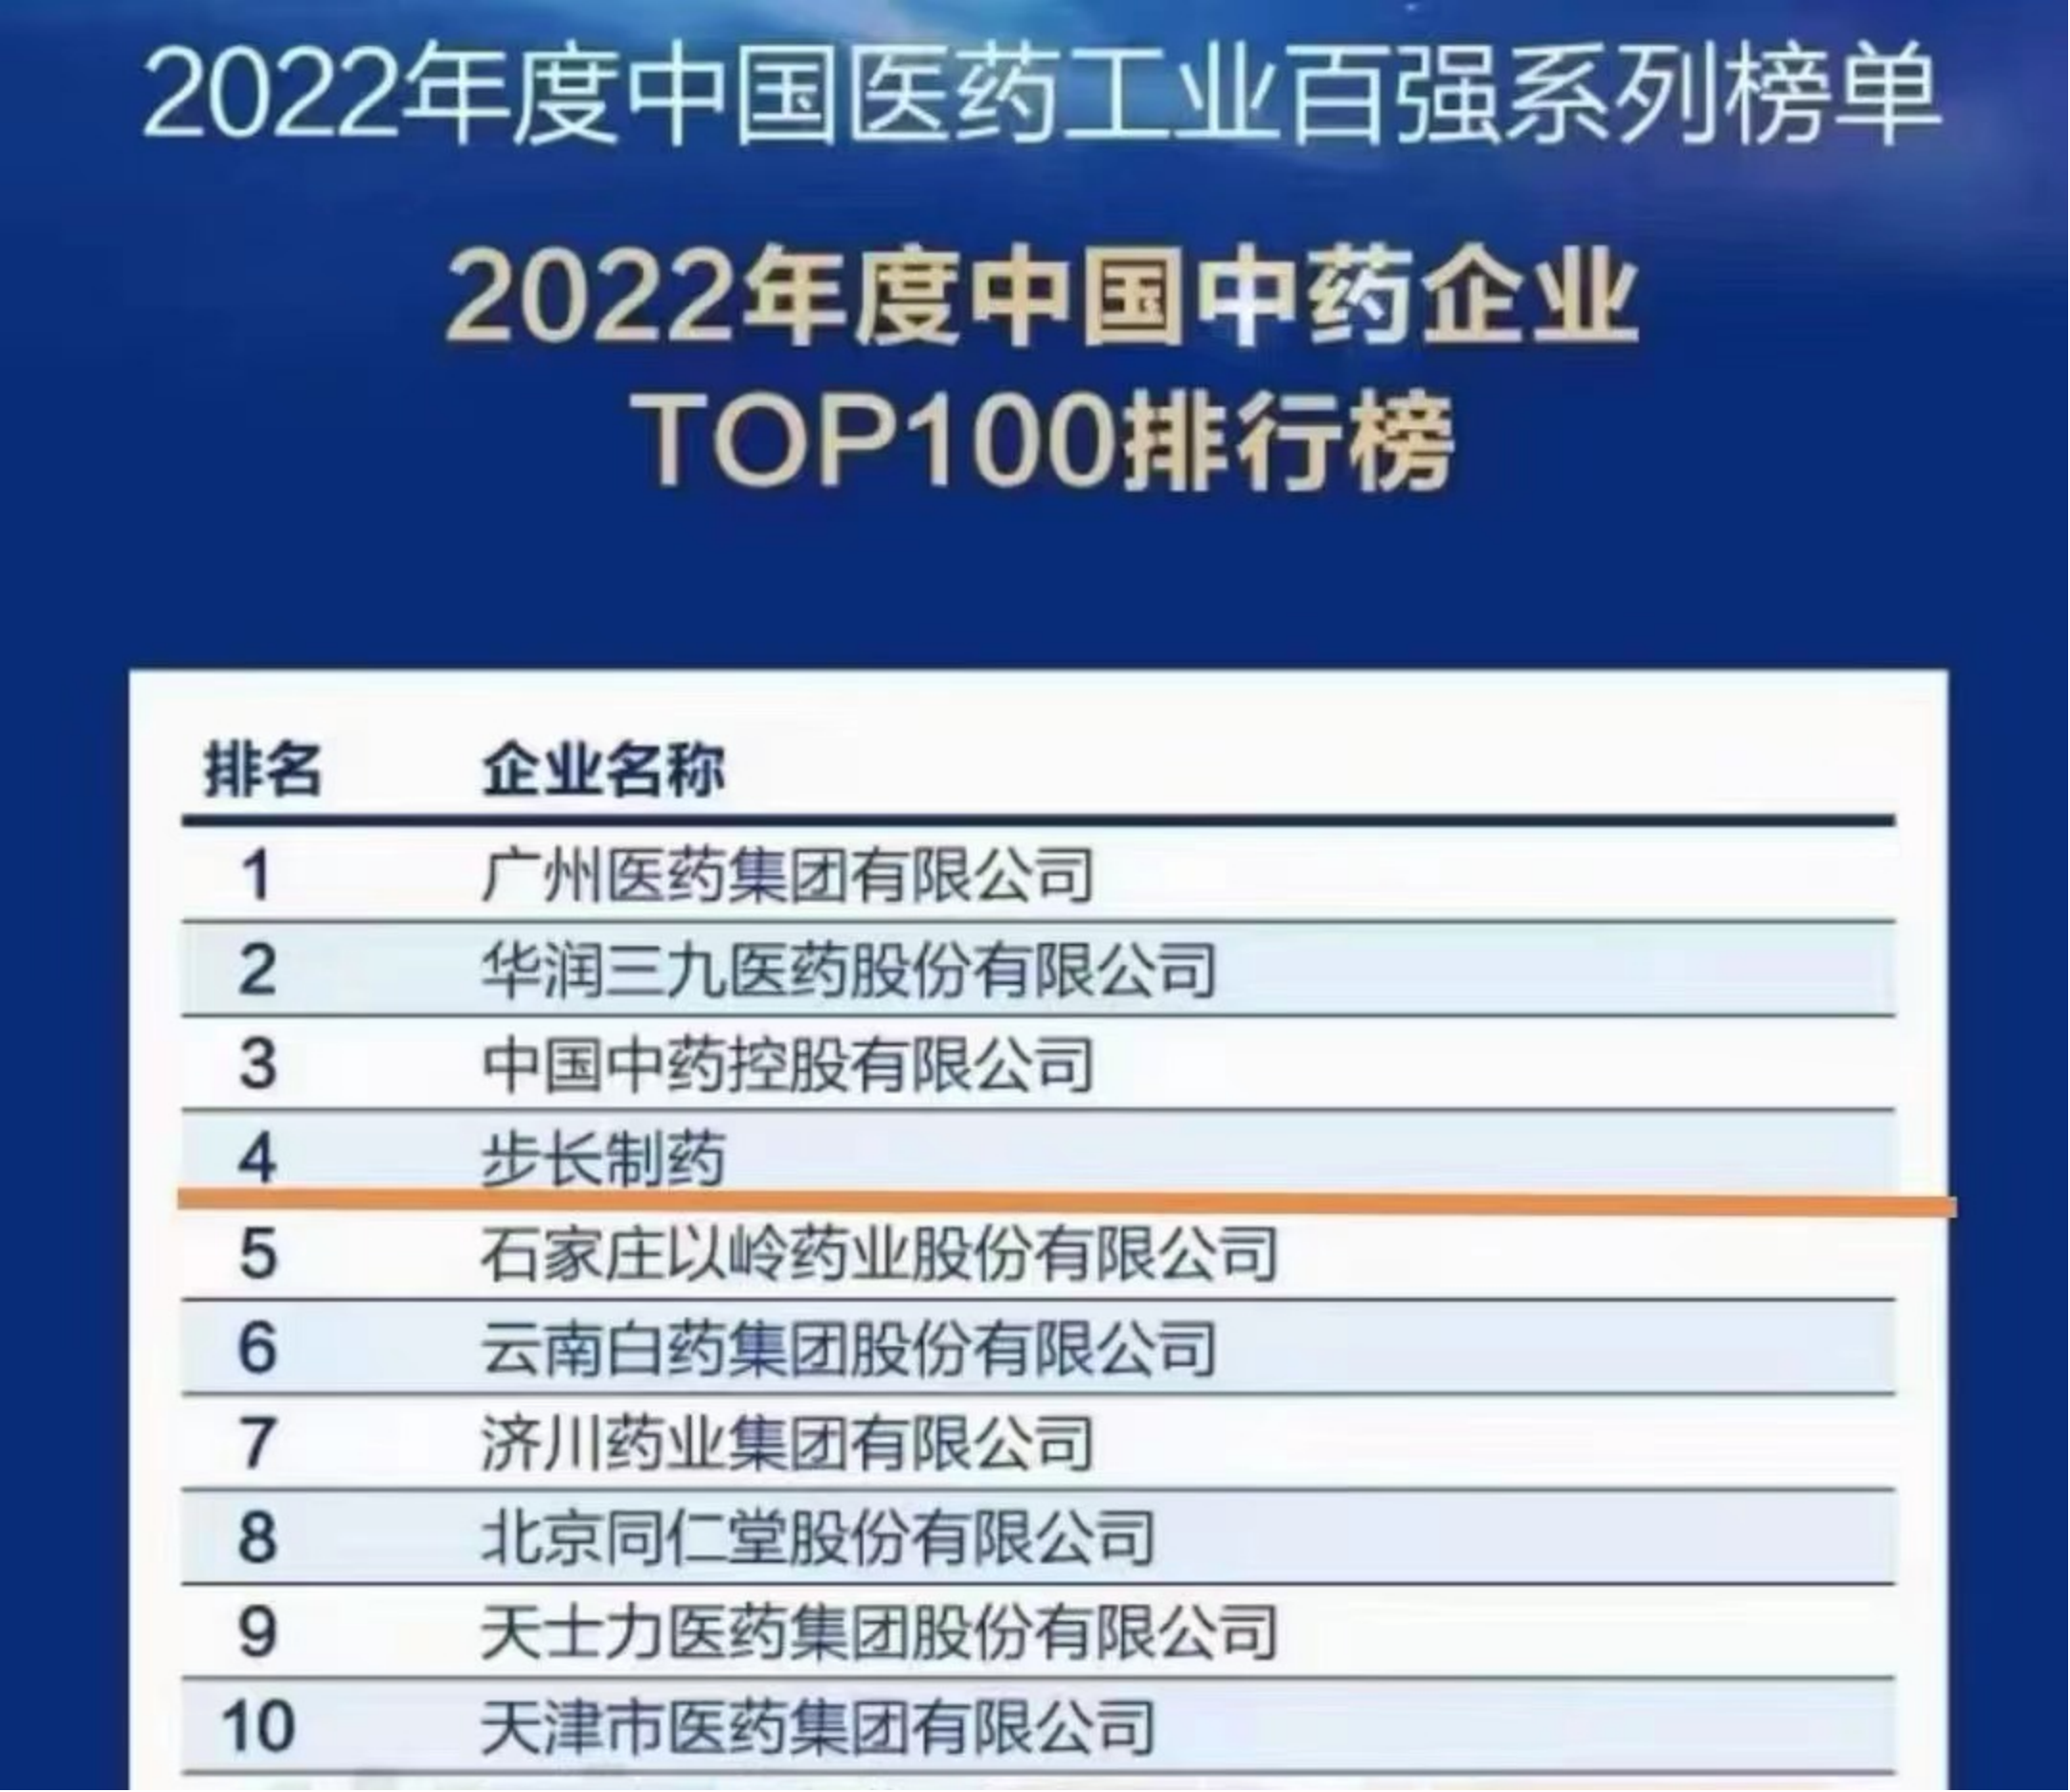 博鱼官网app2022年度华夏中药企业TOP100排行榜发布 步长制药位列民企第